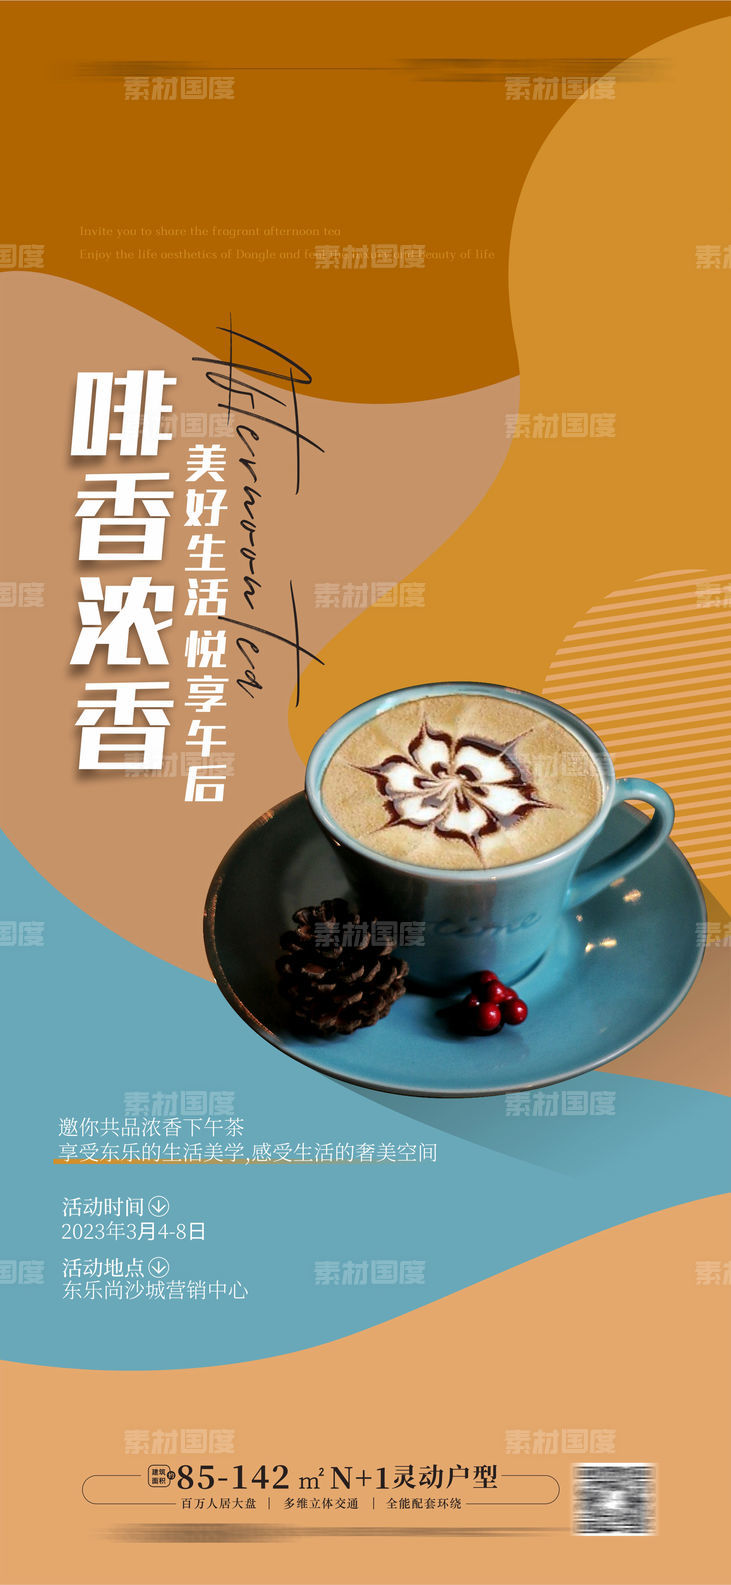 咖啡下午茶活动海报